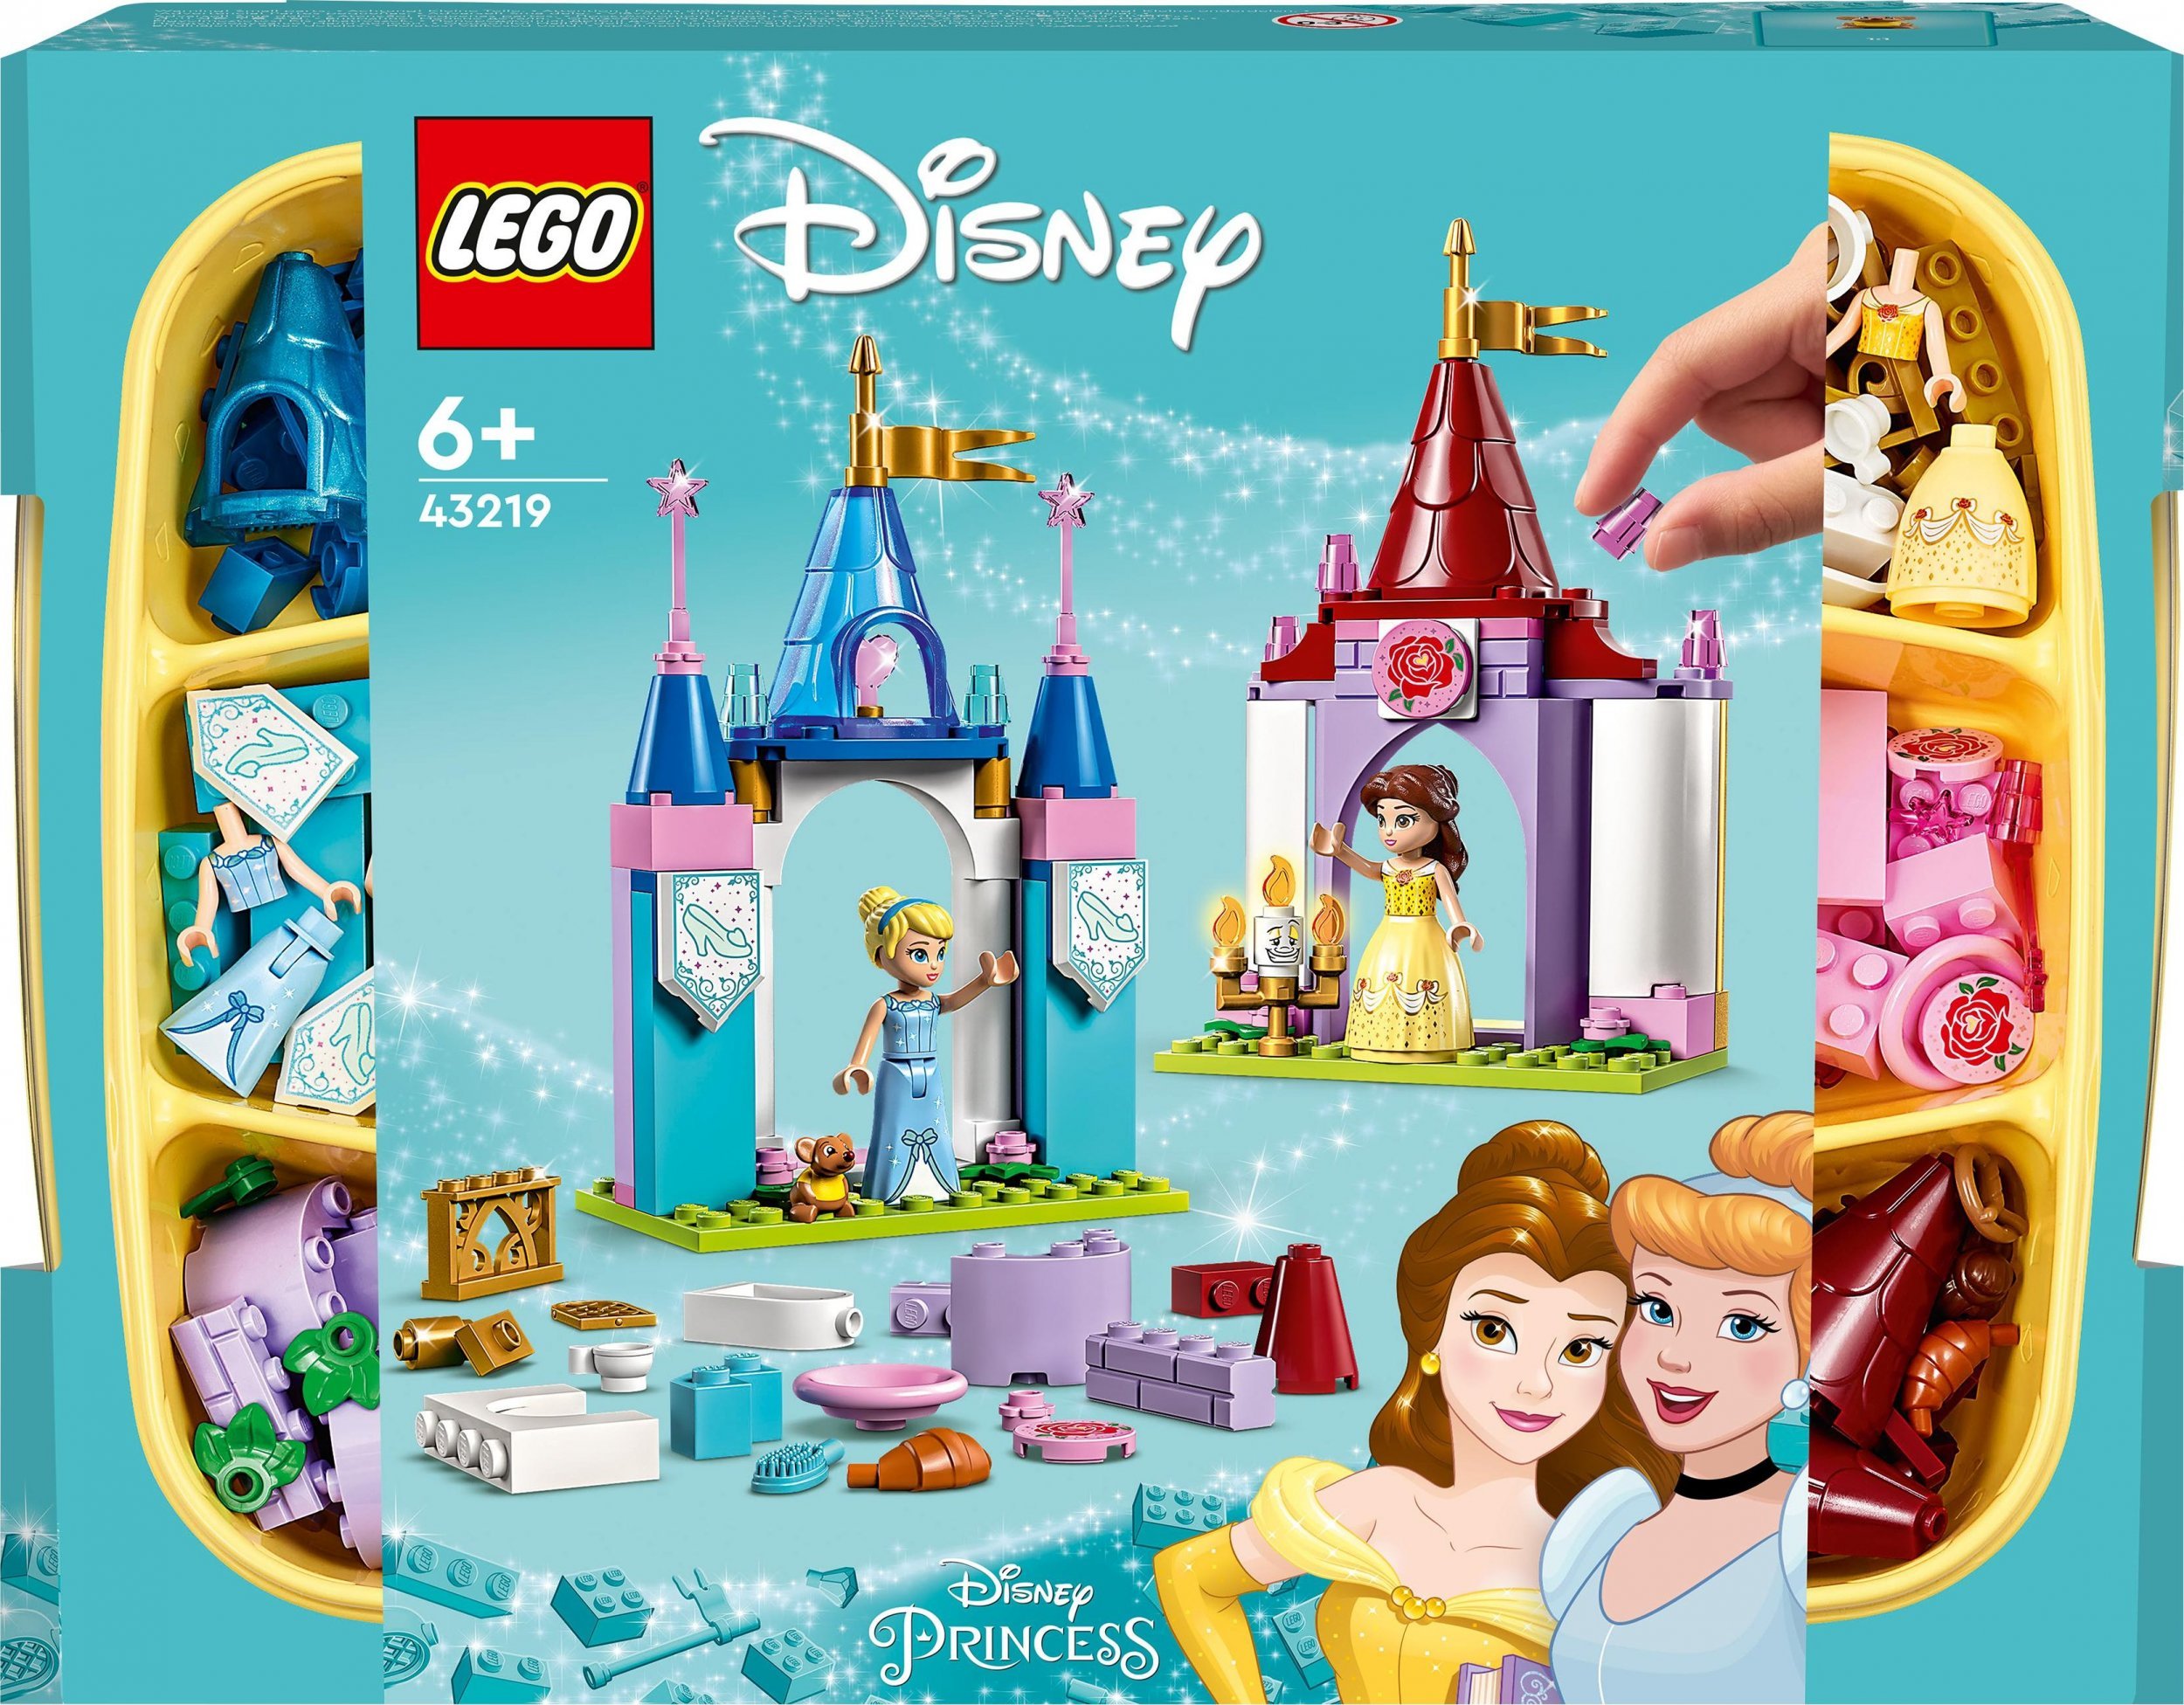 LEGO Disney Princess Creative Disney Princess Castles (43219)